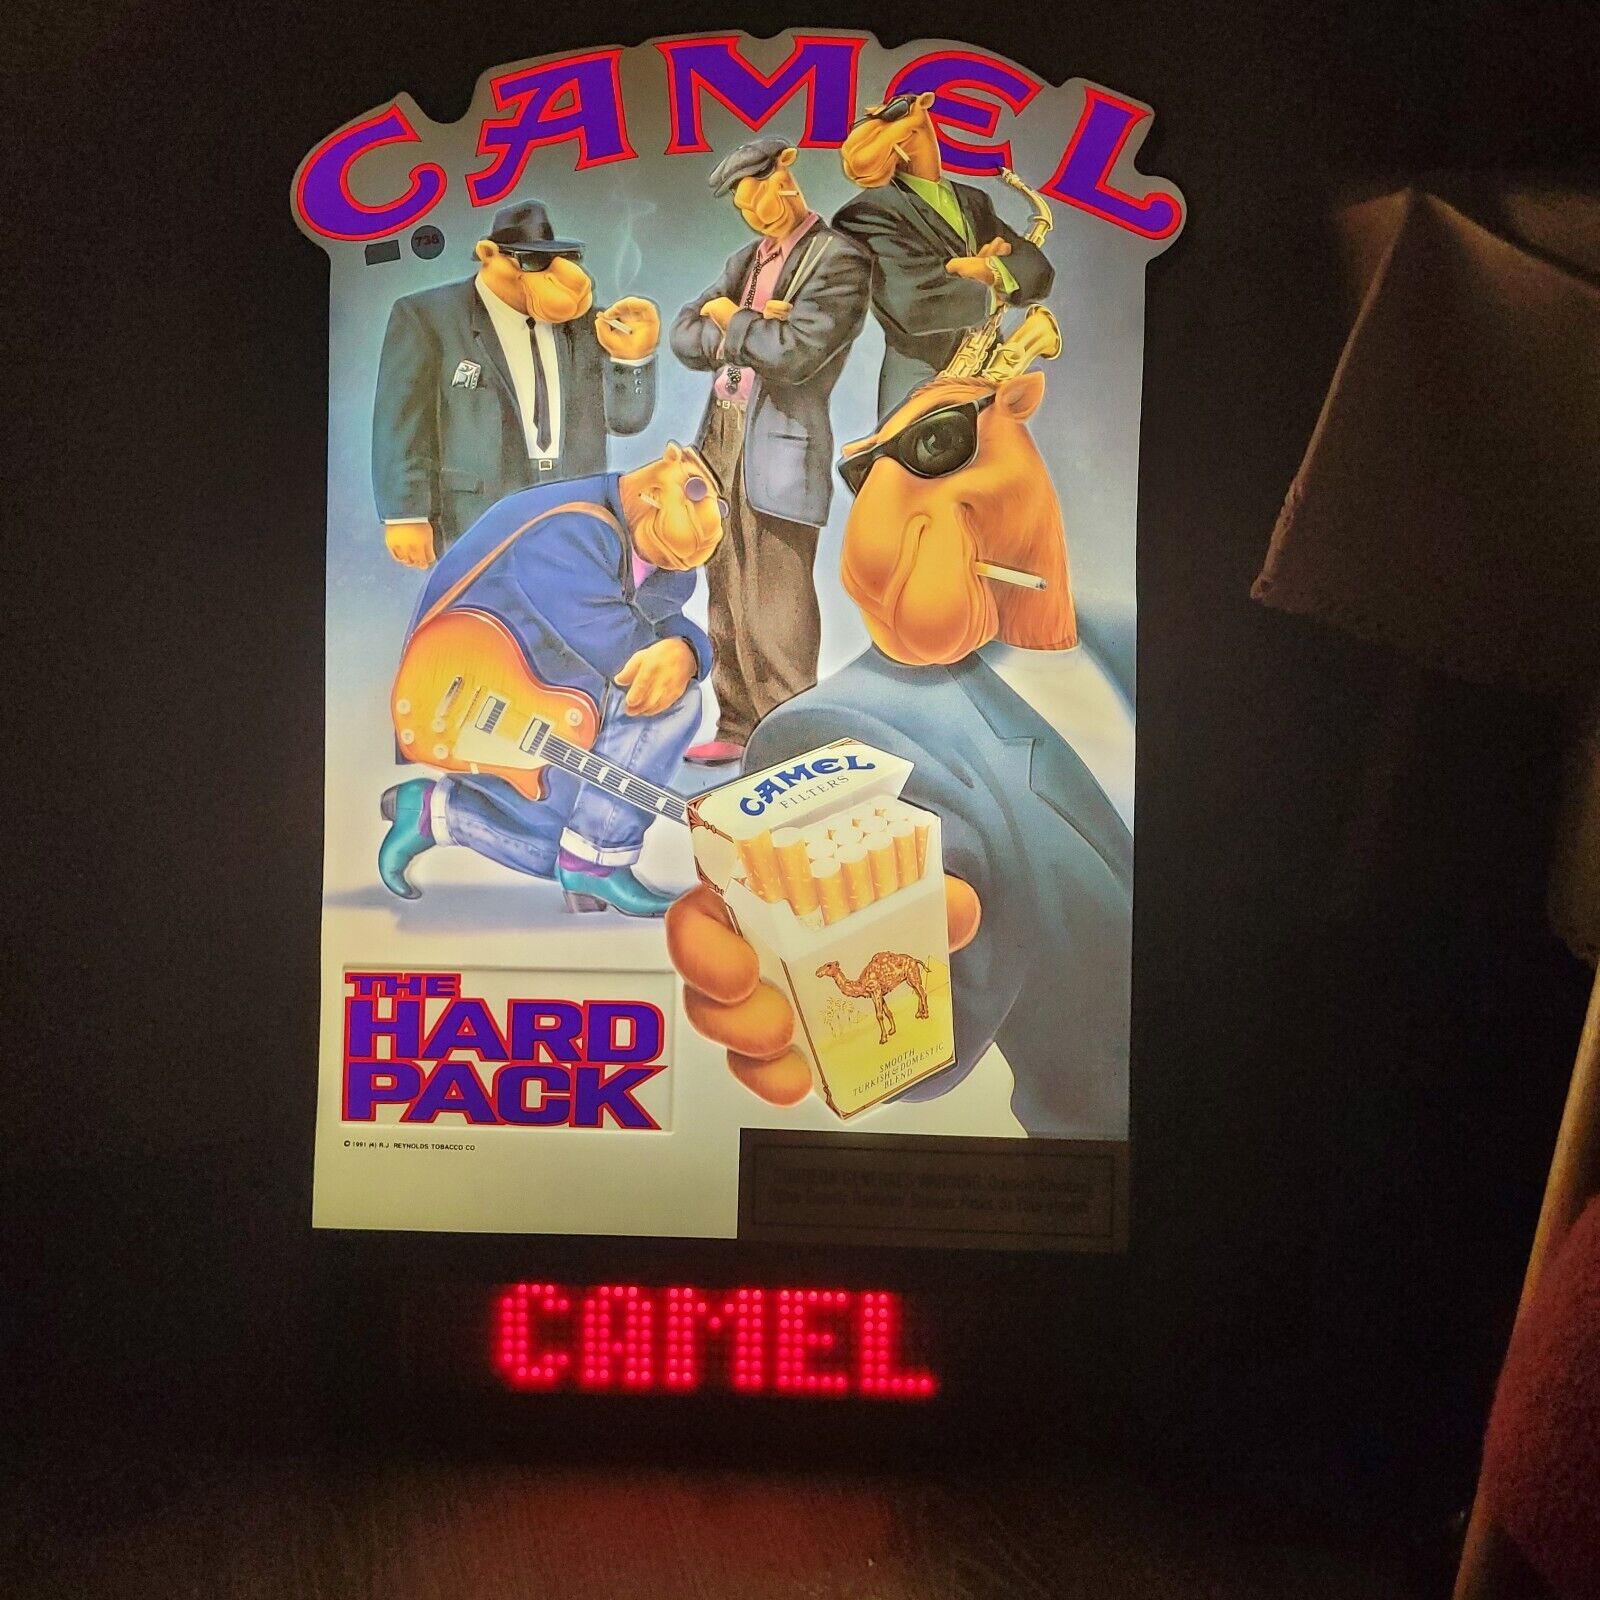 Camel Cigarettes 